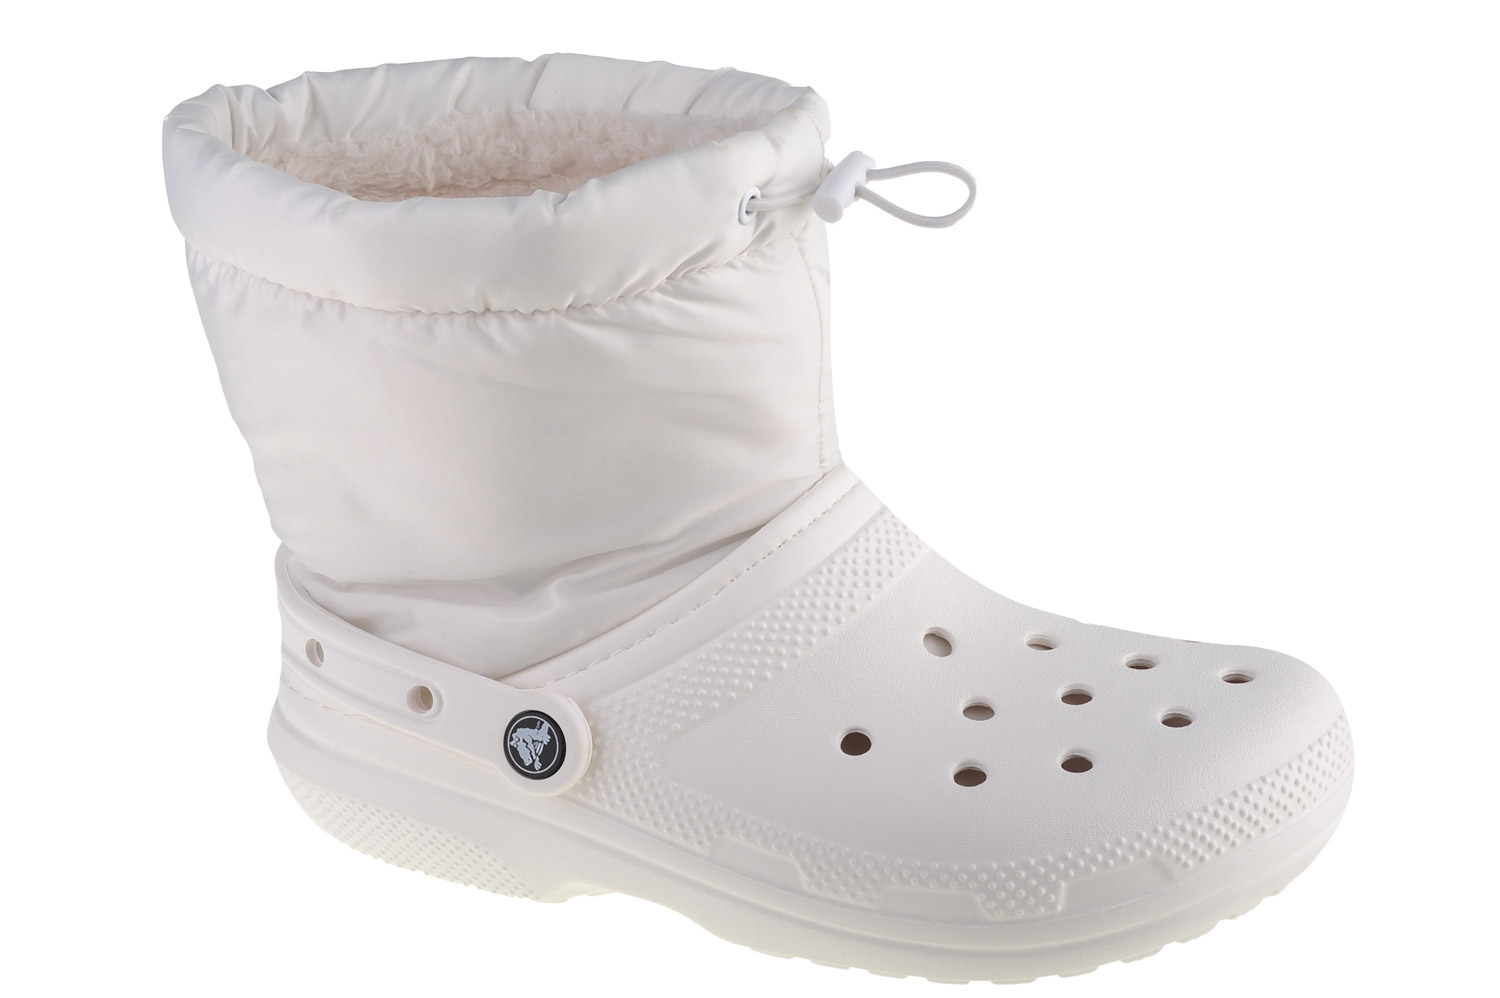 Ботинки Crocs Crocs Classic Lined Neo Puff Boot, белый ботинки classic lined neo puff boot crocs синий